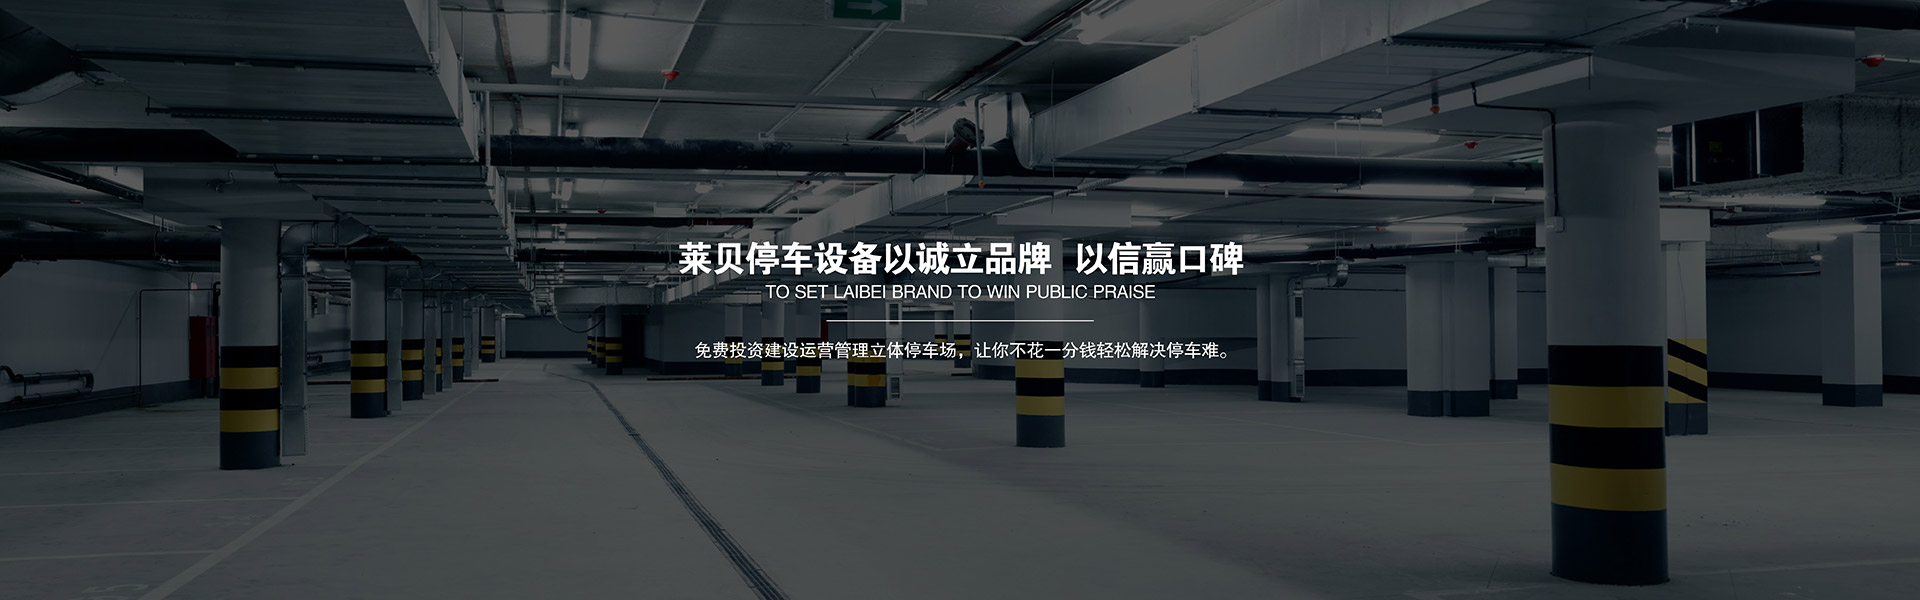 天津停车场规划运营